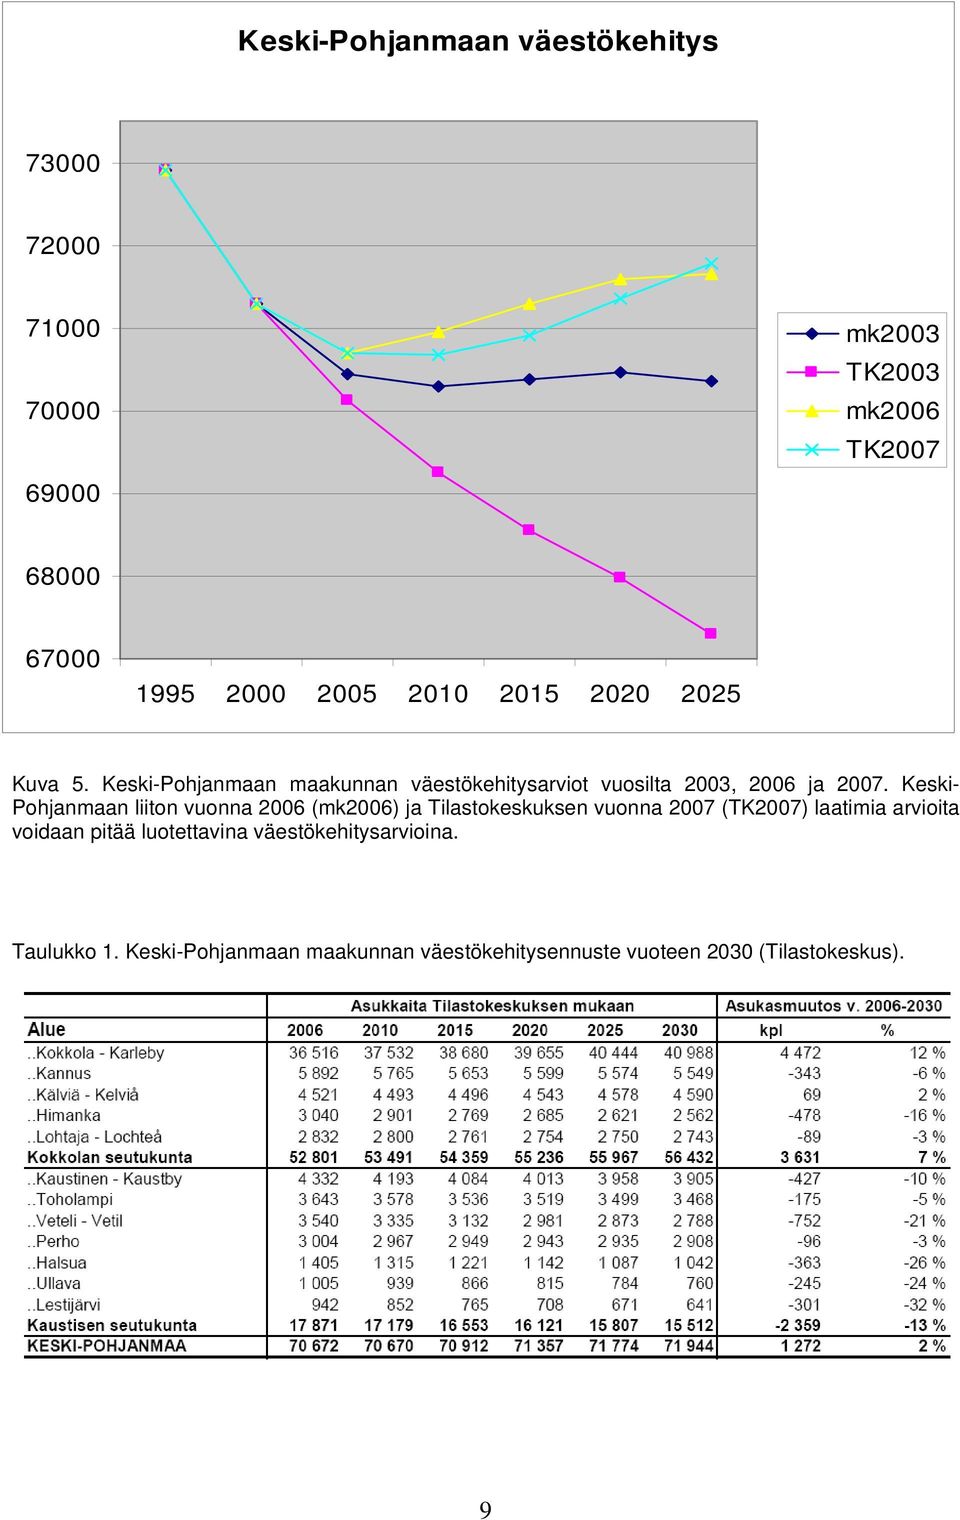 Keski- Pohjanmaan liiton vuonna 2006 (mk2006) ja Tilastokeskuksen vuonna 2007 (TK2007) laatimia arvioita voidaan